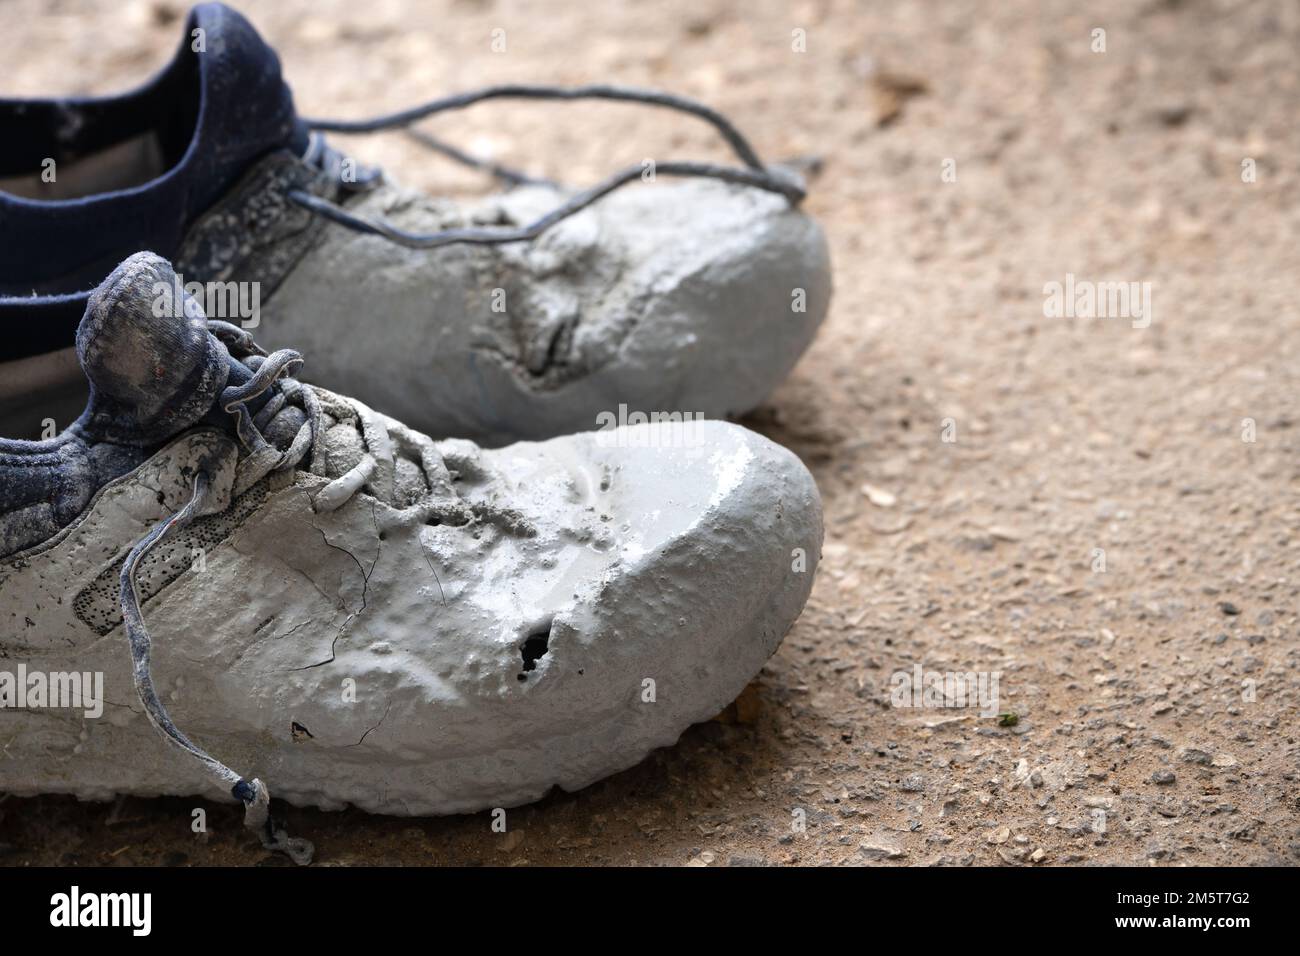 Chaussures fortement tachées dans la peinture grise sur un asphalte Banque D'Images